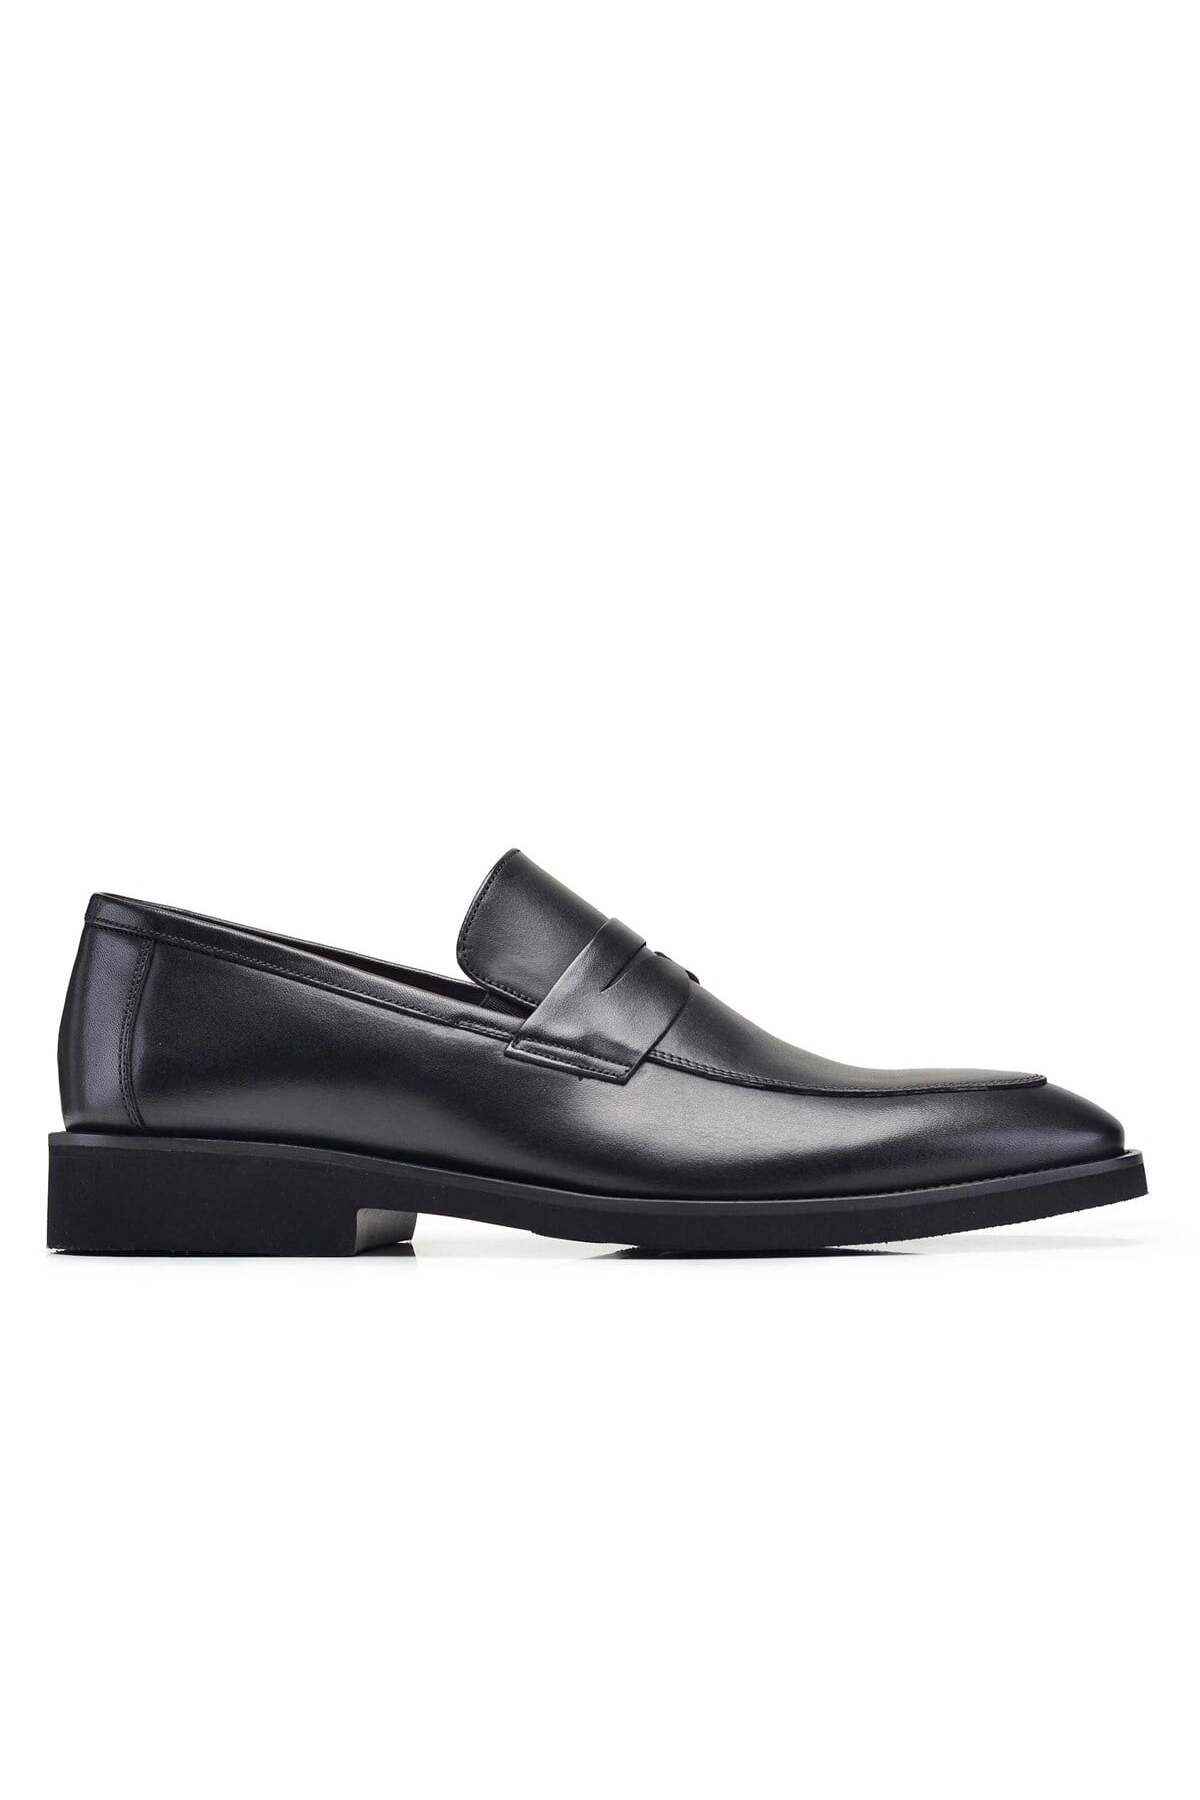 Nevzat Onay Hakiki Deri Siyah Günlük Loafer Erkek Ayakkabı -10054-